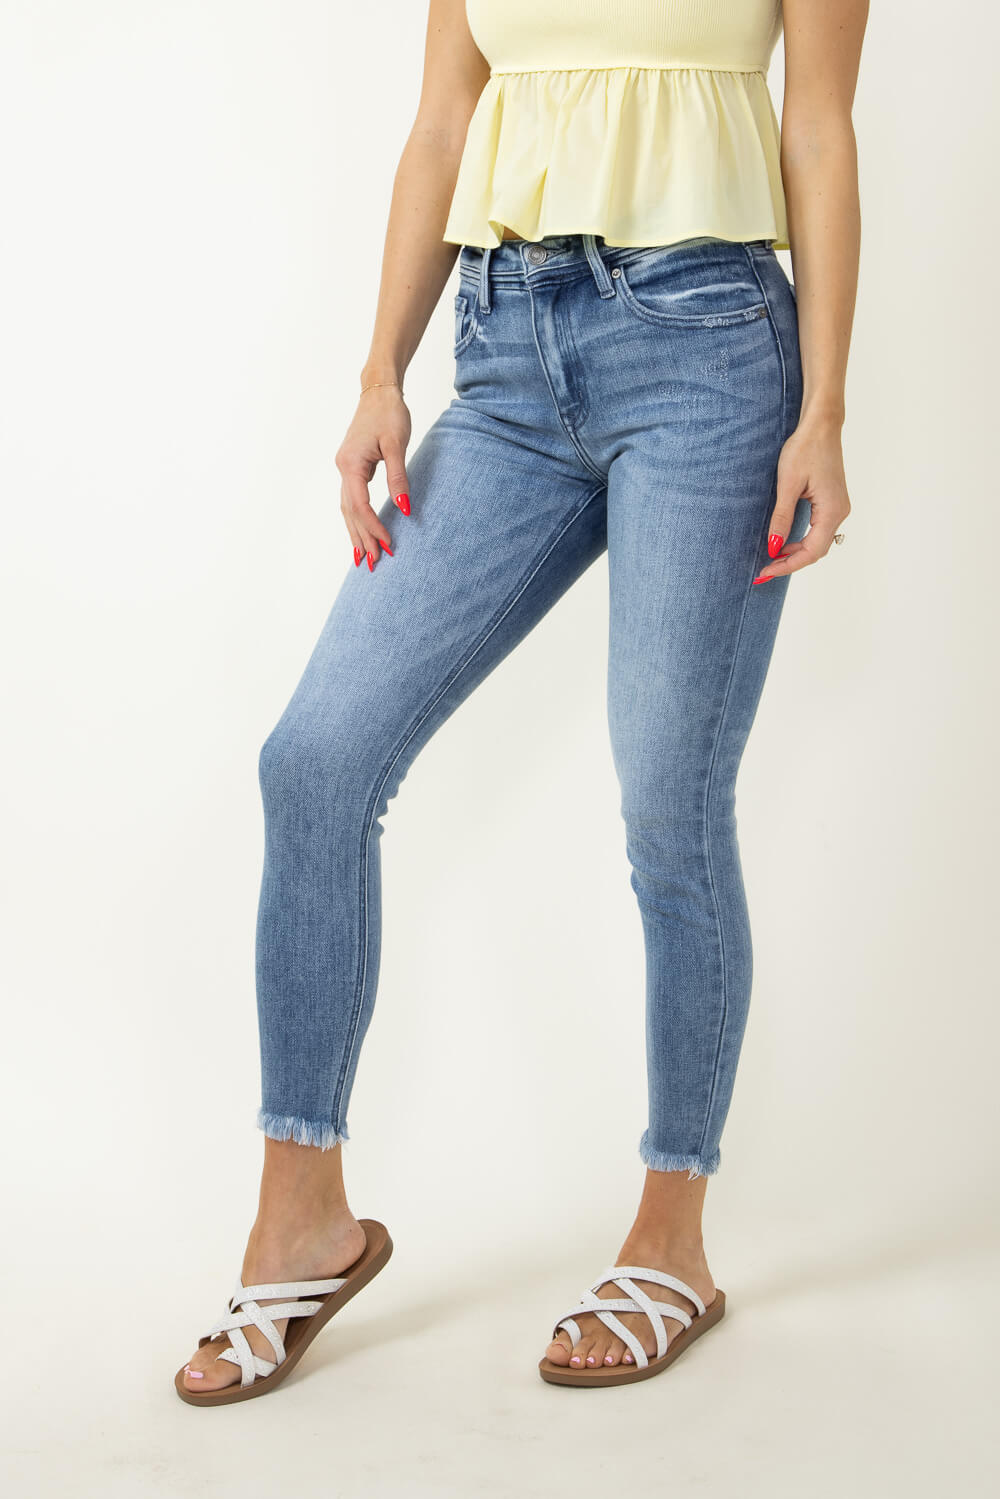 KanCan High Rise Frayed Hem Skinny Jeans for Women